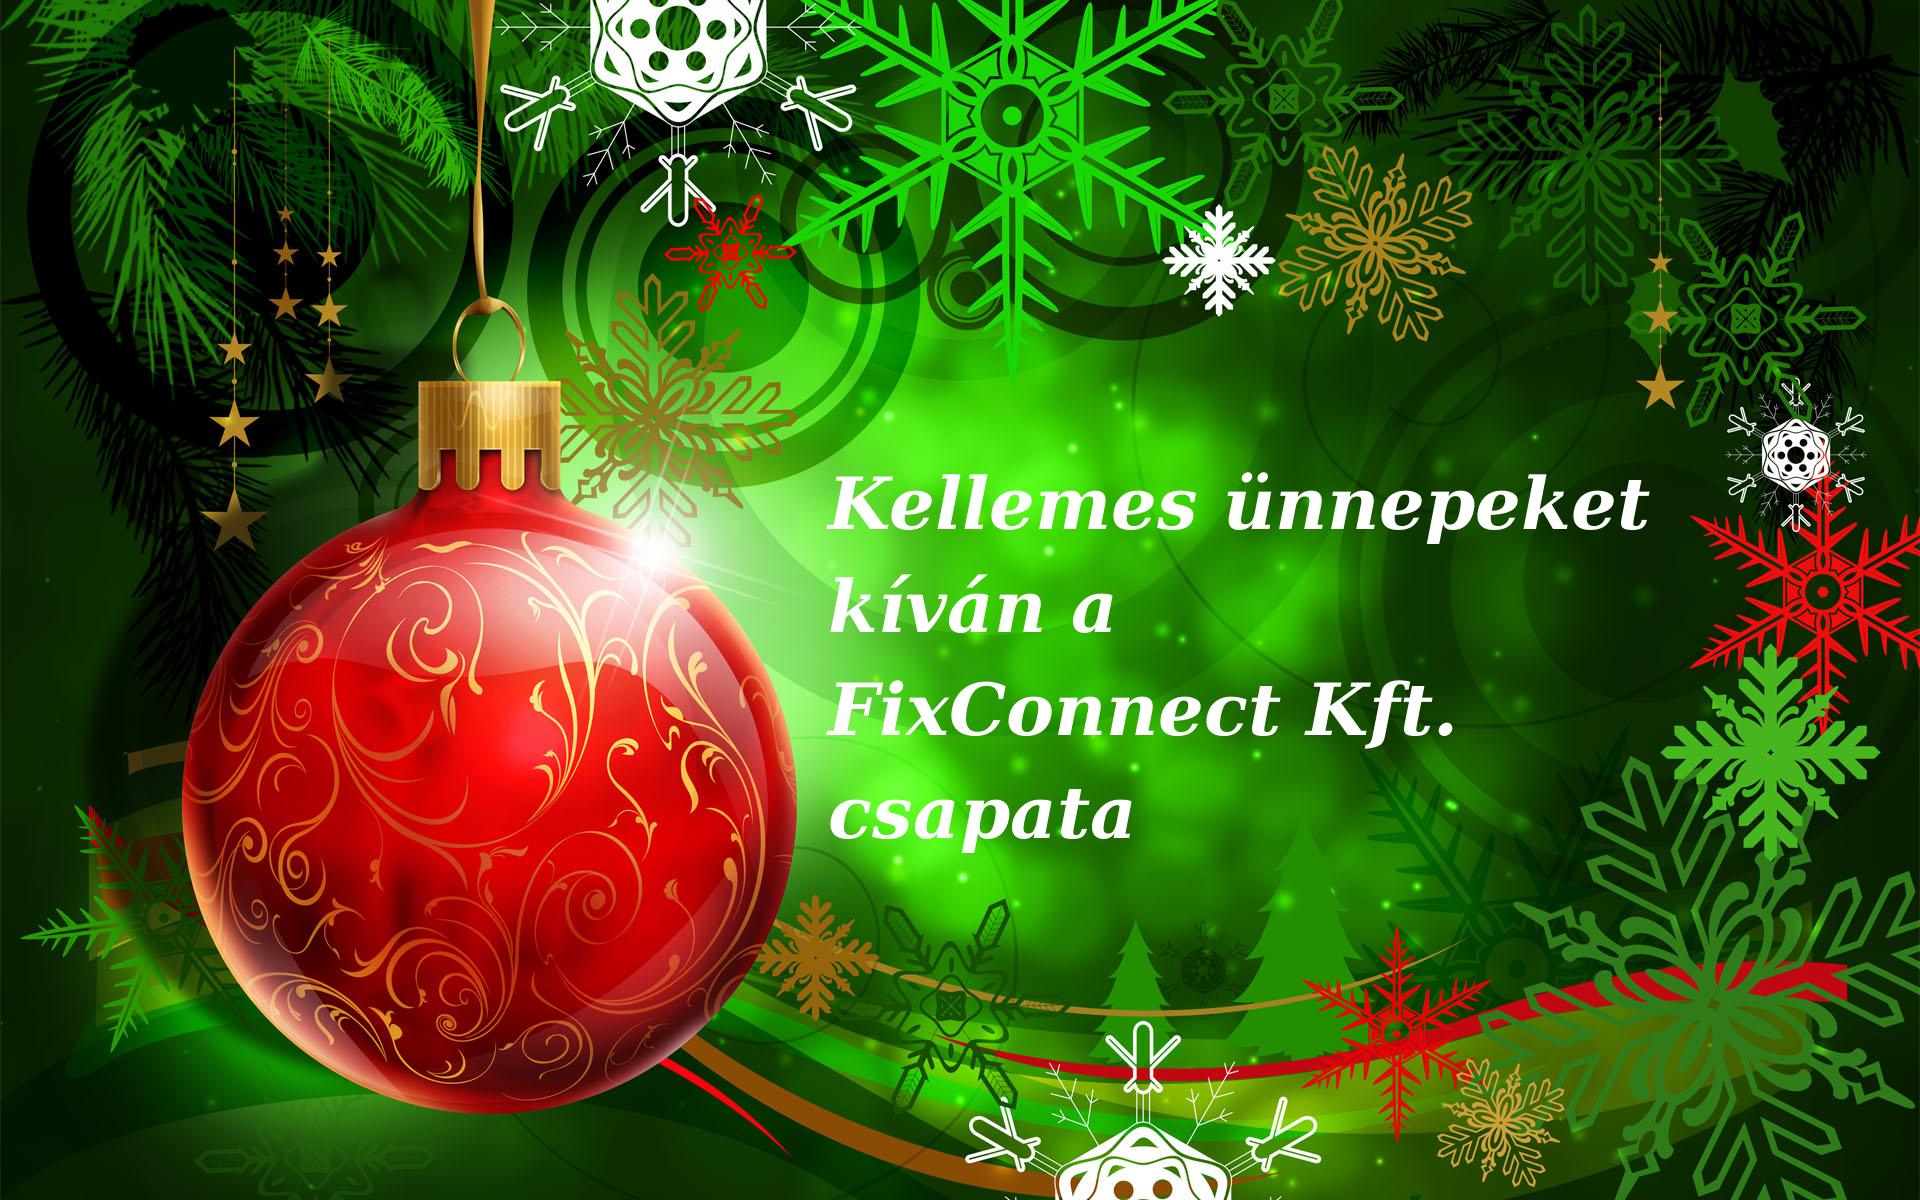 Kellemes ünnepeket kíván a Fixconnect Kft. csapata